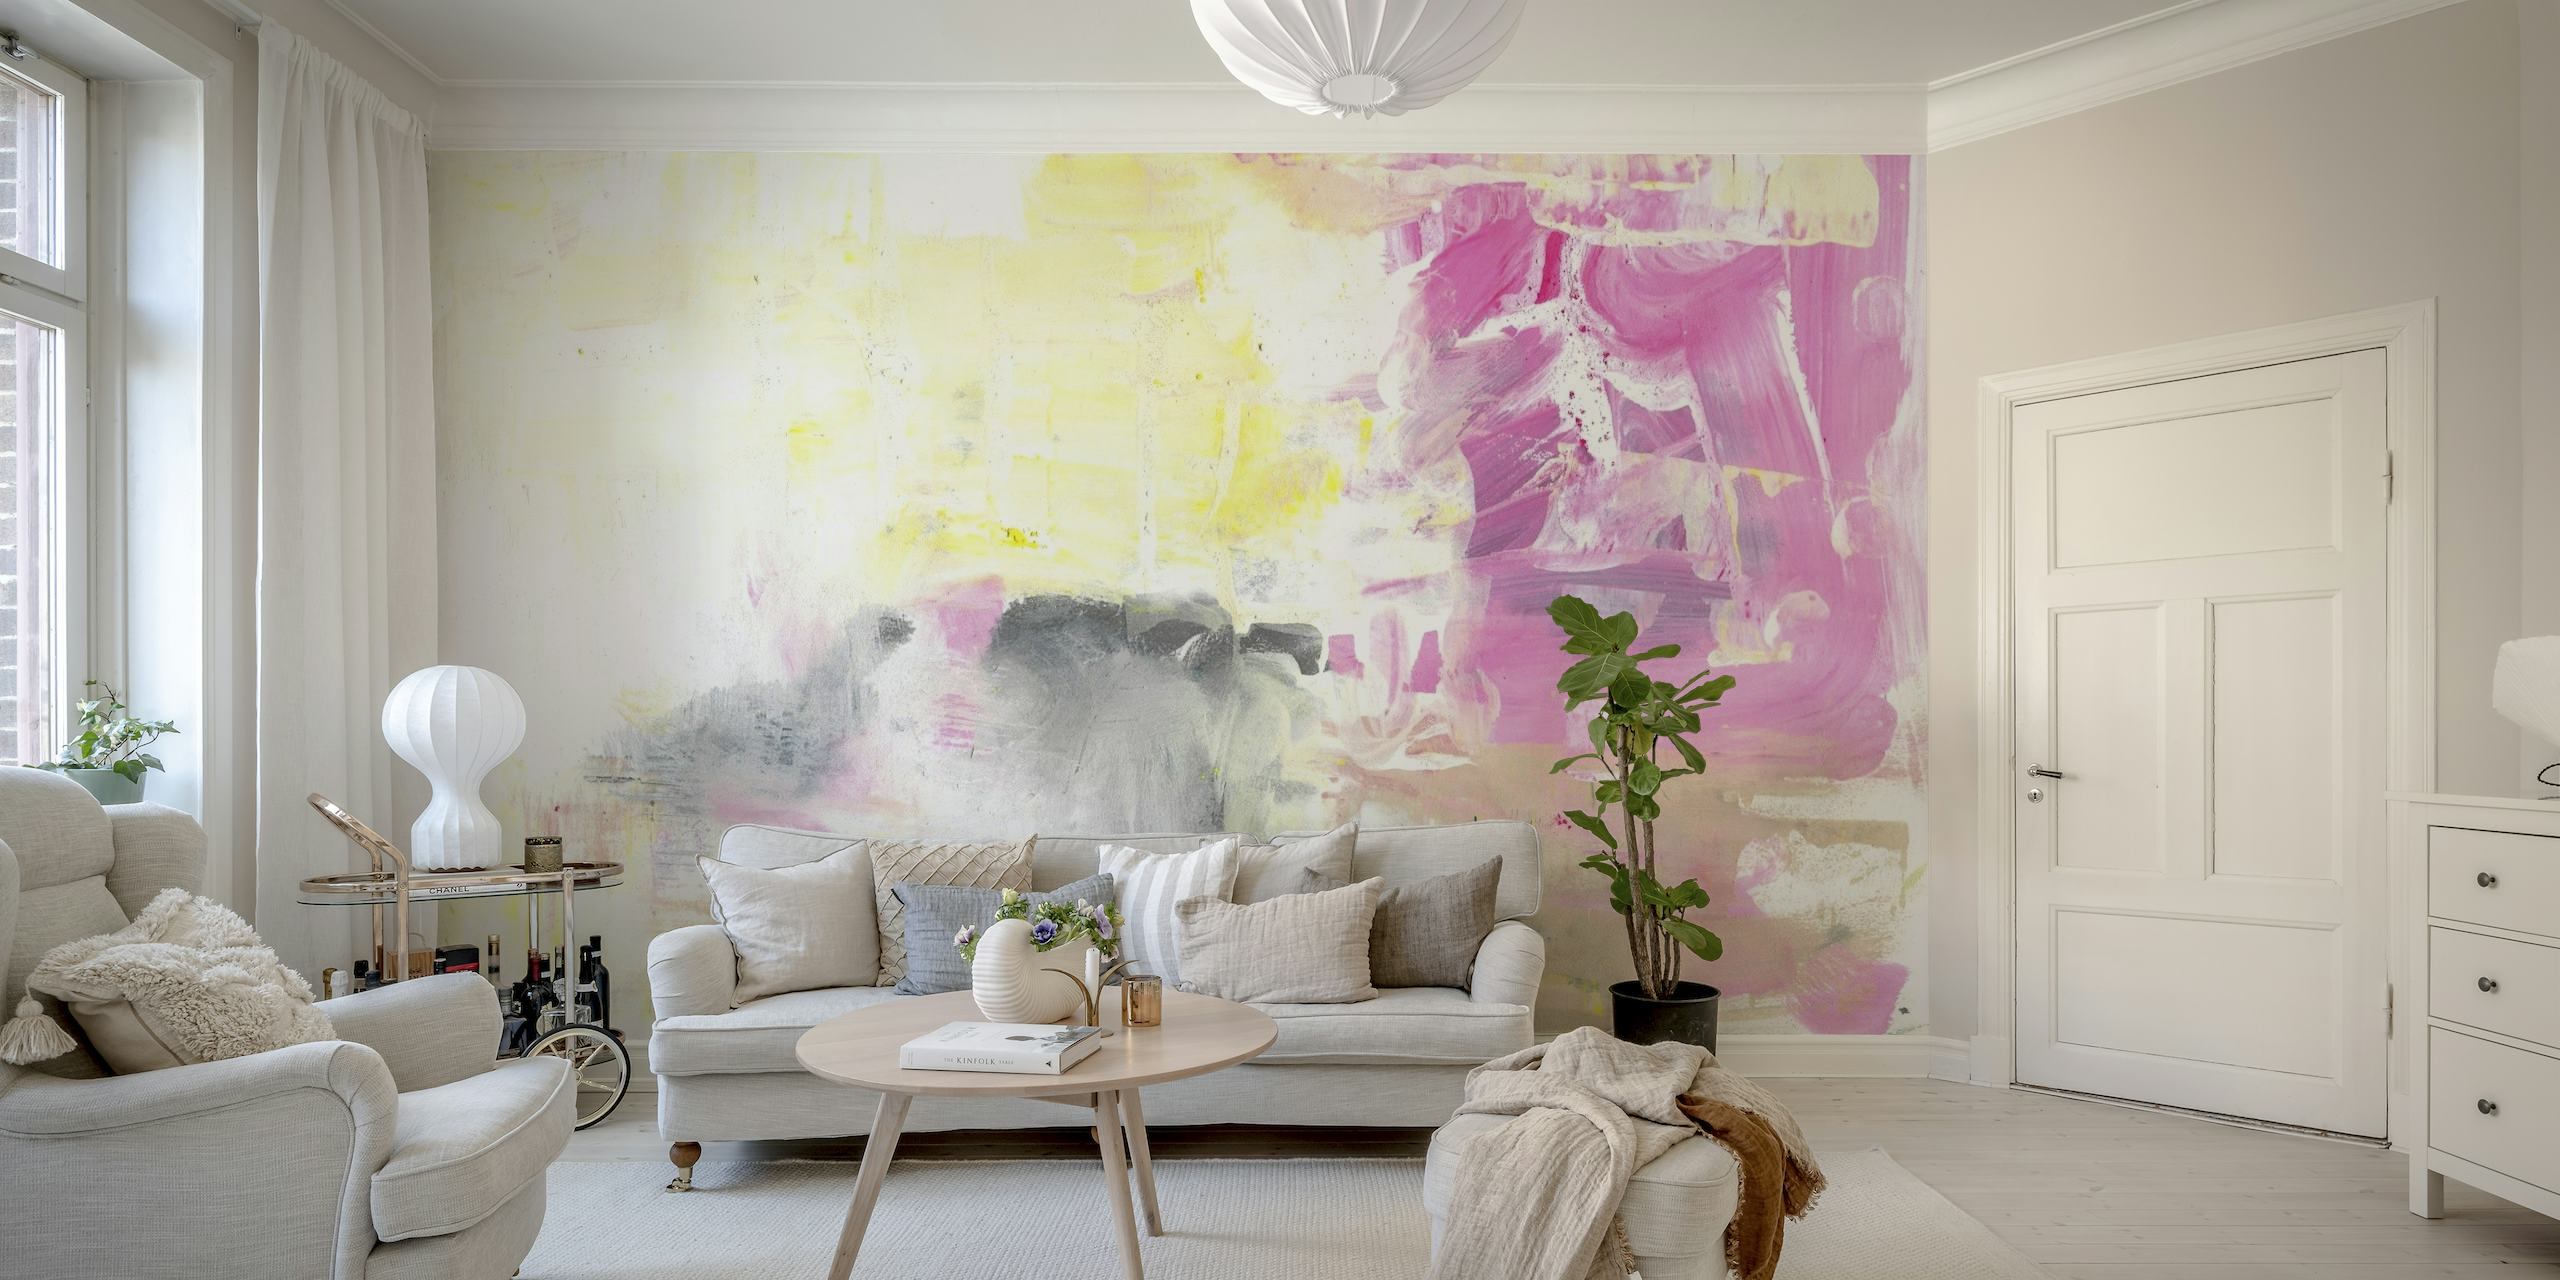 Abstrakt maleri nr. 17 veggmaleri med myke rosa, grå og hvite toner med uttrykksfulle pensel